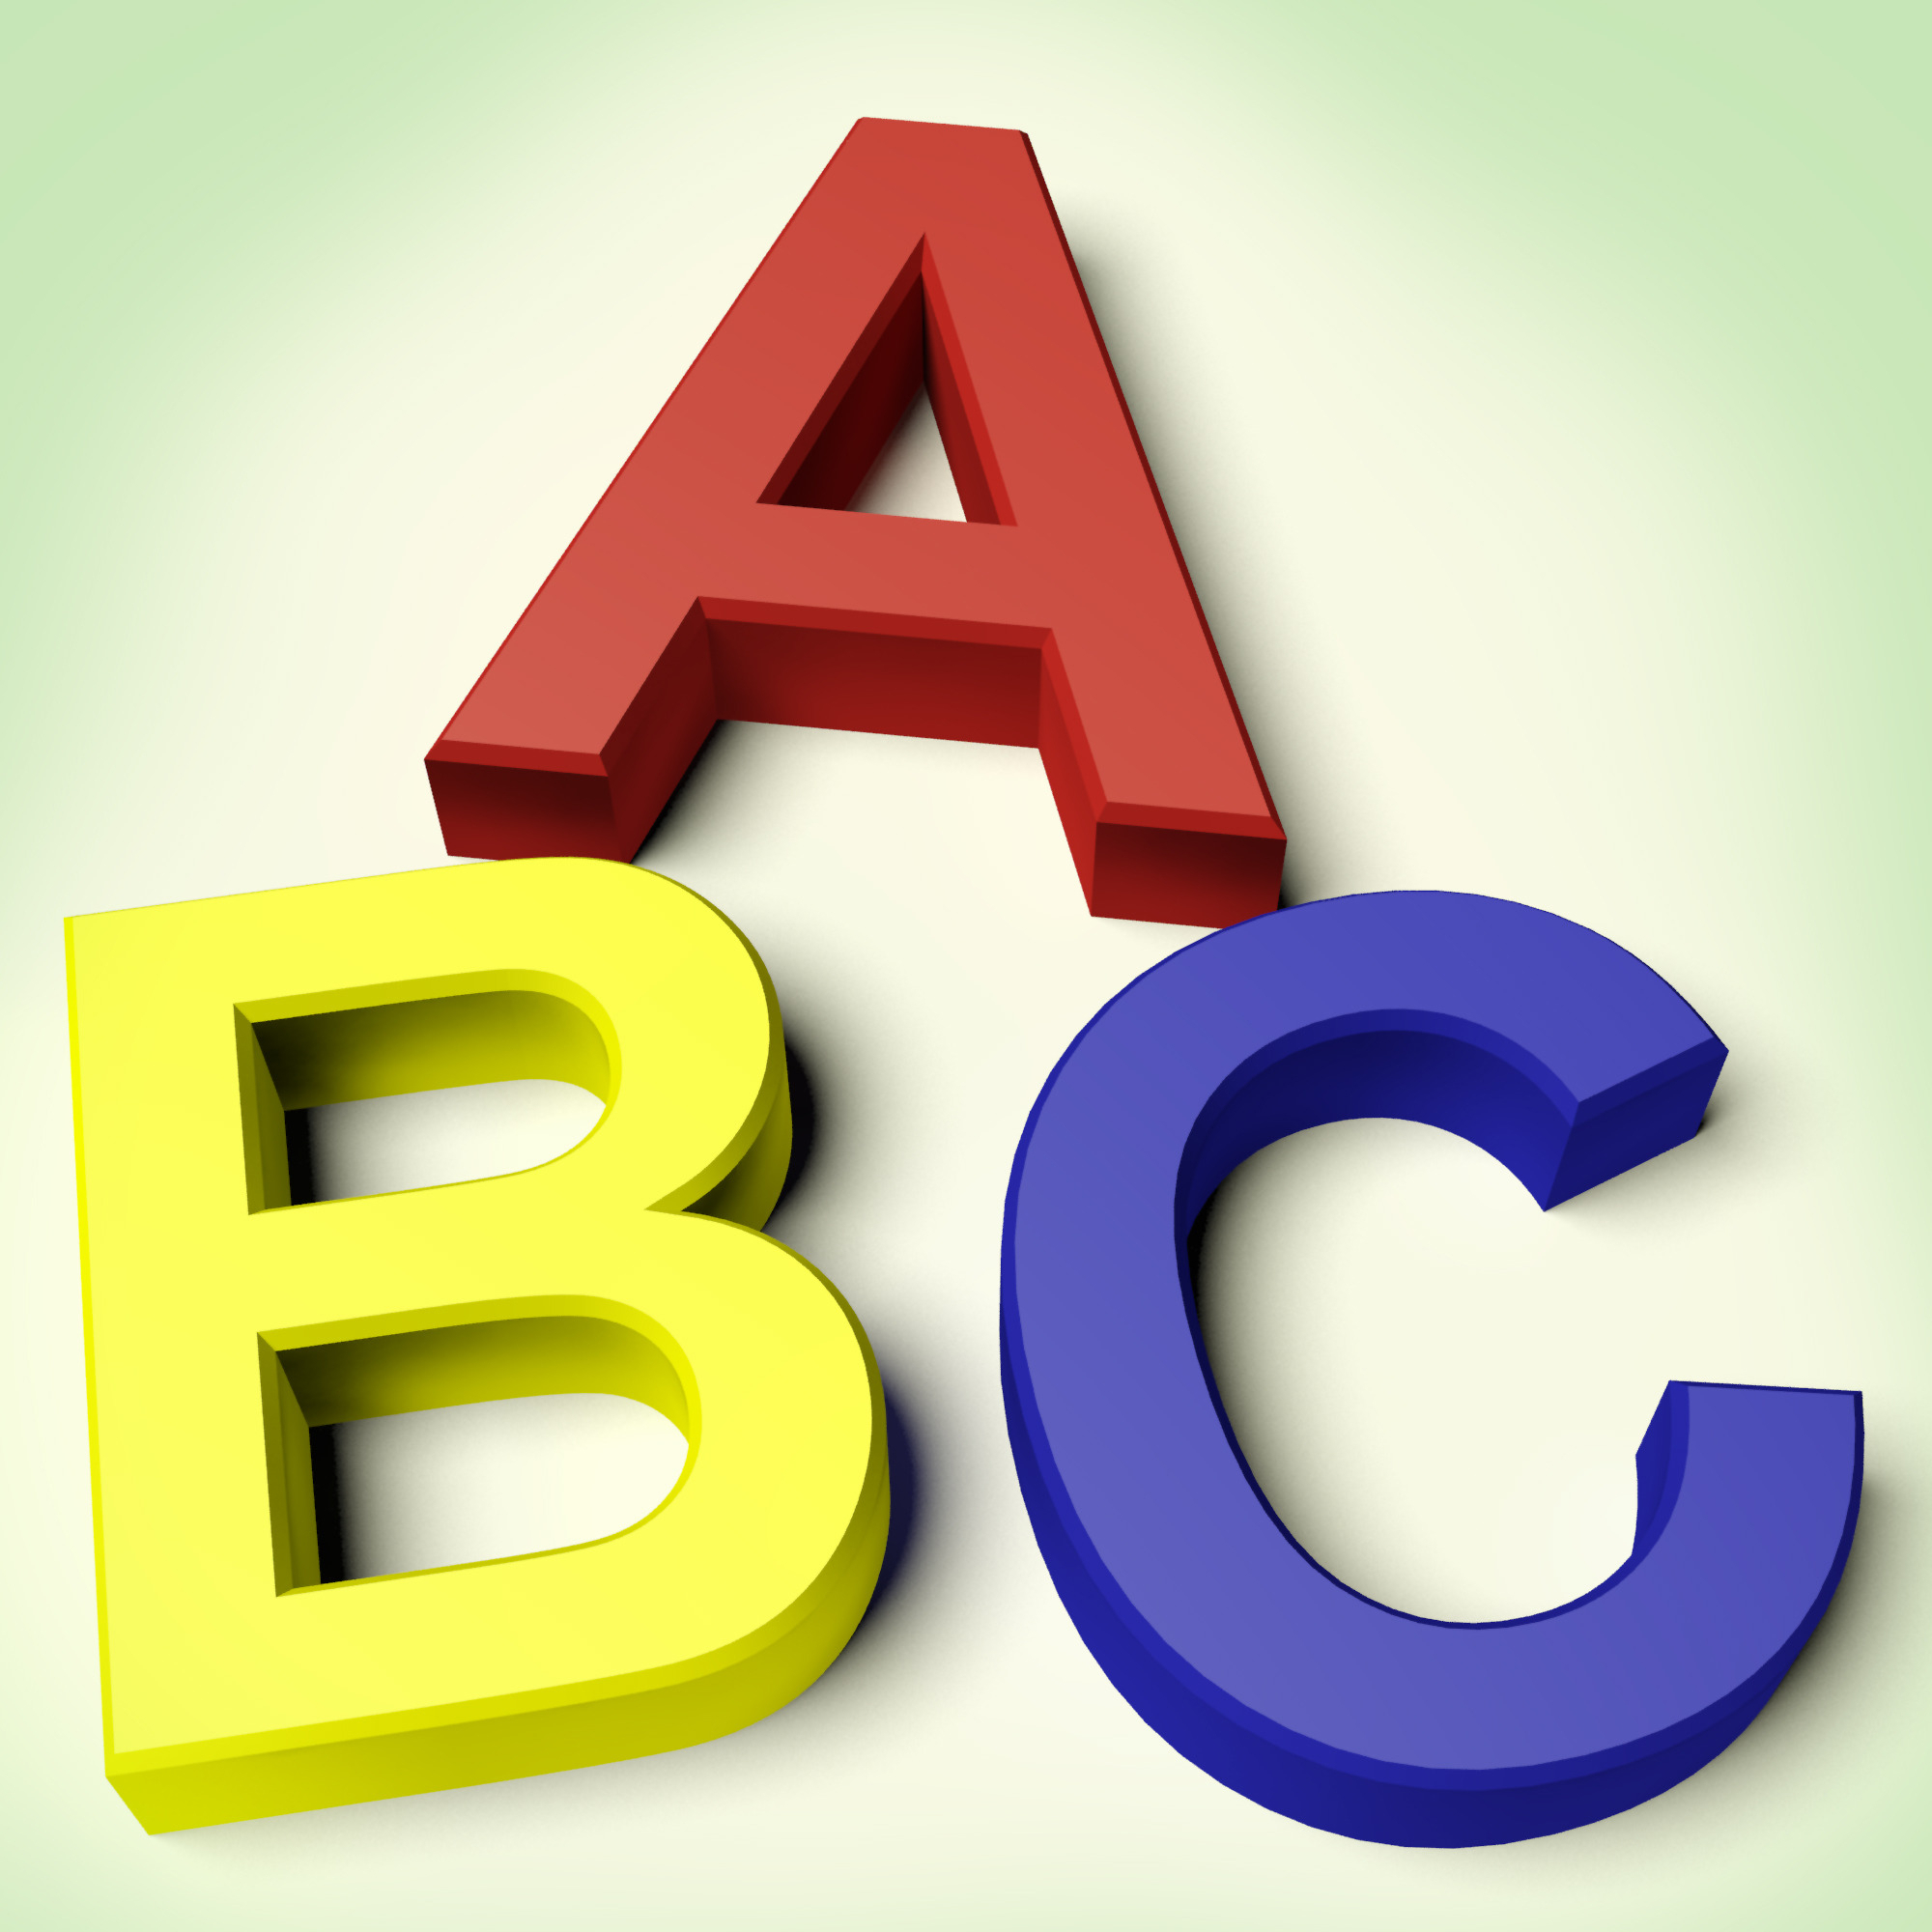 The ABC's of Behavior